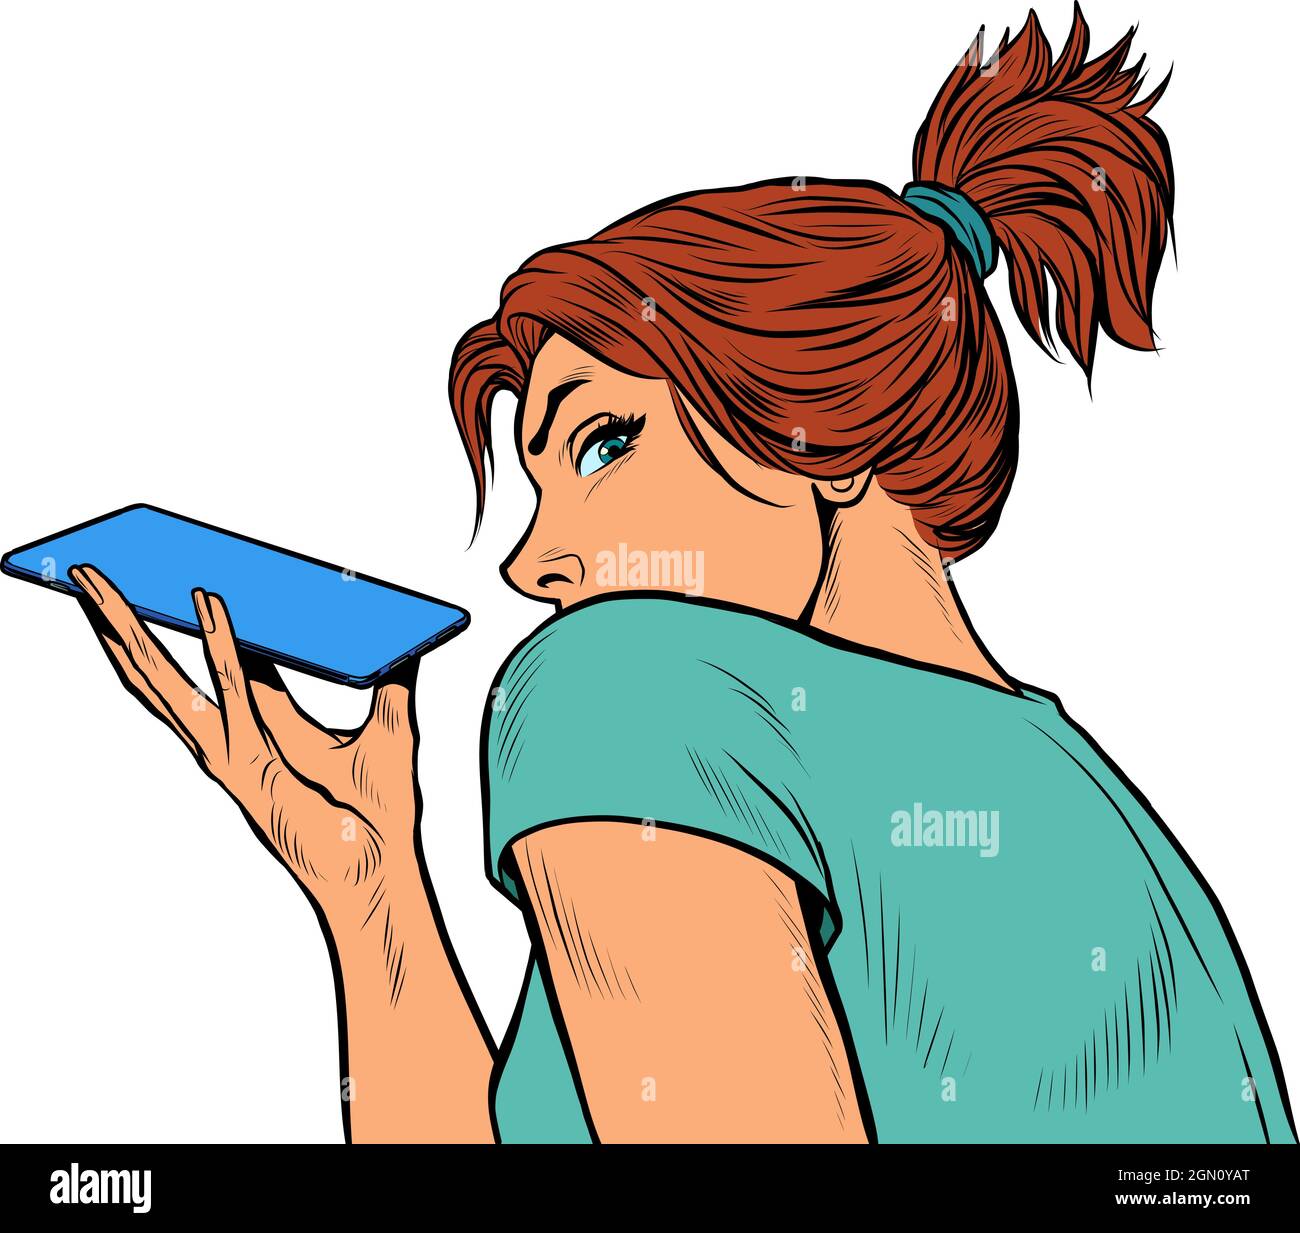 una mujer está hablando en un smartphone con un altavoz, sosteniendo el teléfono horizontalmente Ilustración del Vector